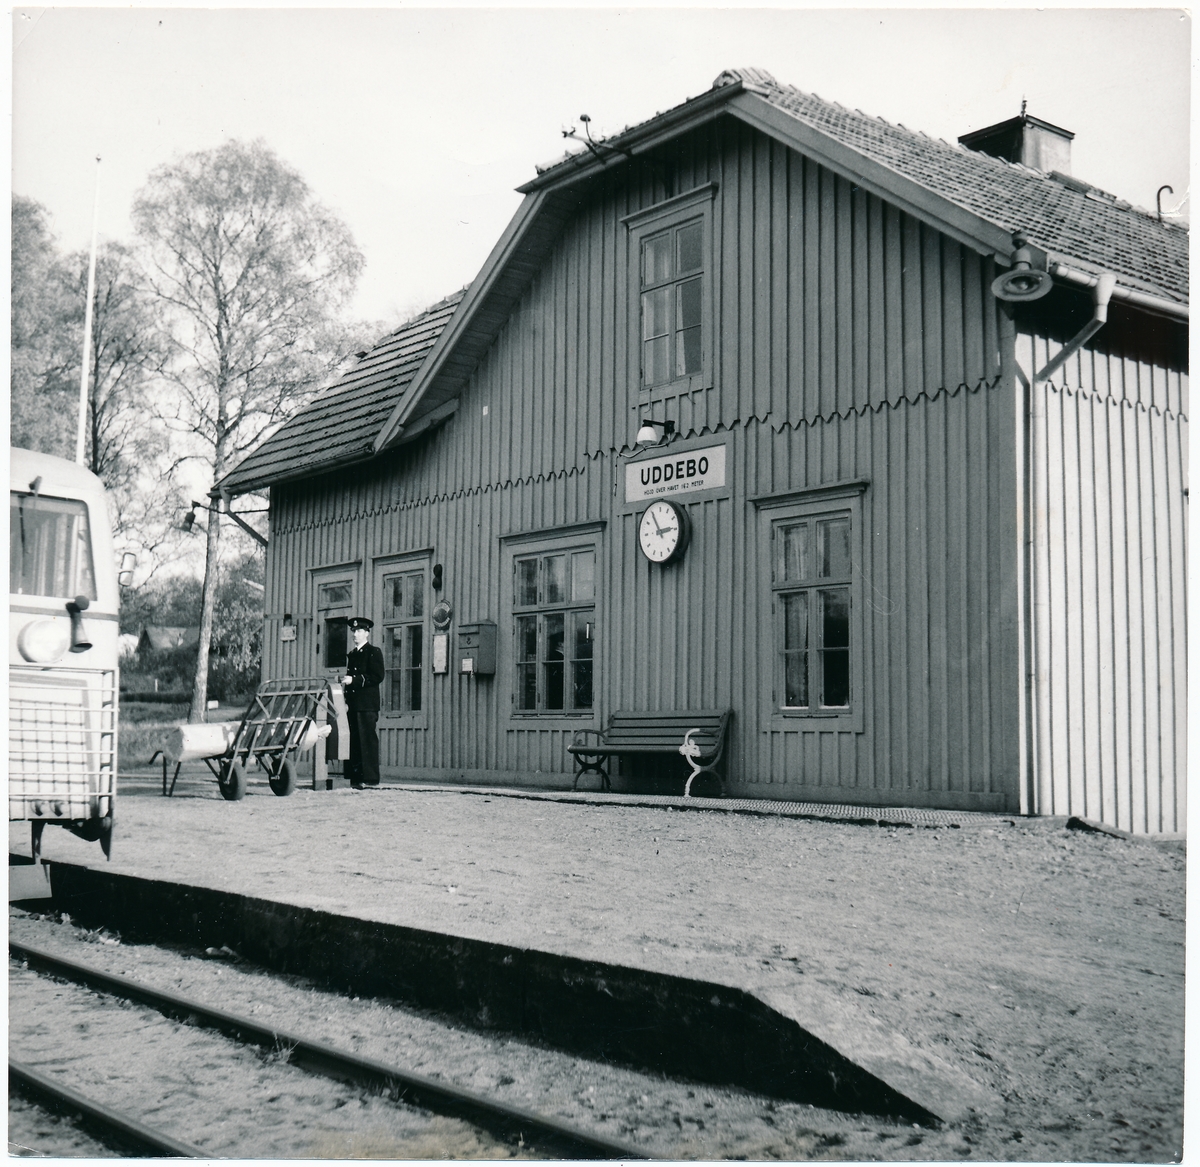 Uddebo station, konduktör Sten Järneberg, nedläggning av Falkenberg-Limmared 1/11 1959-16/12 1960